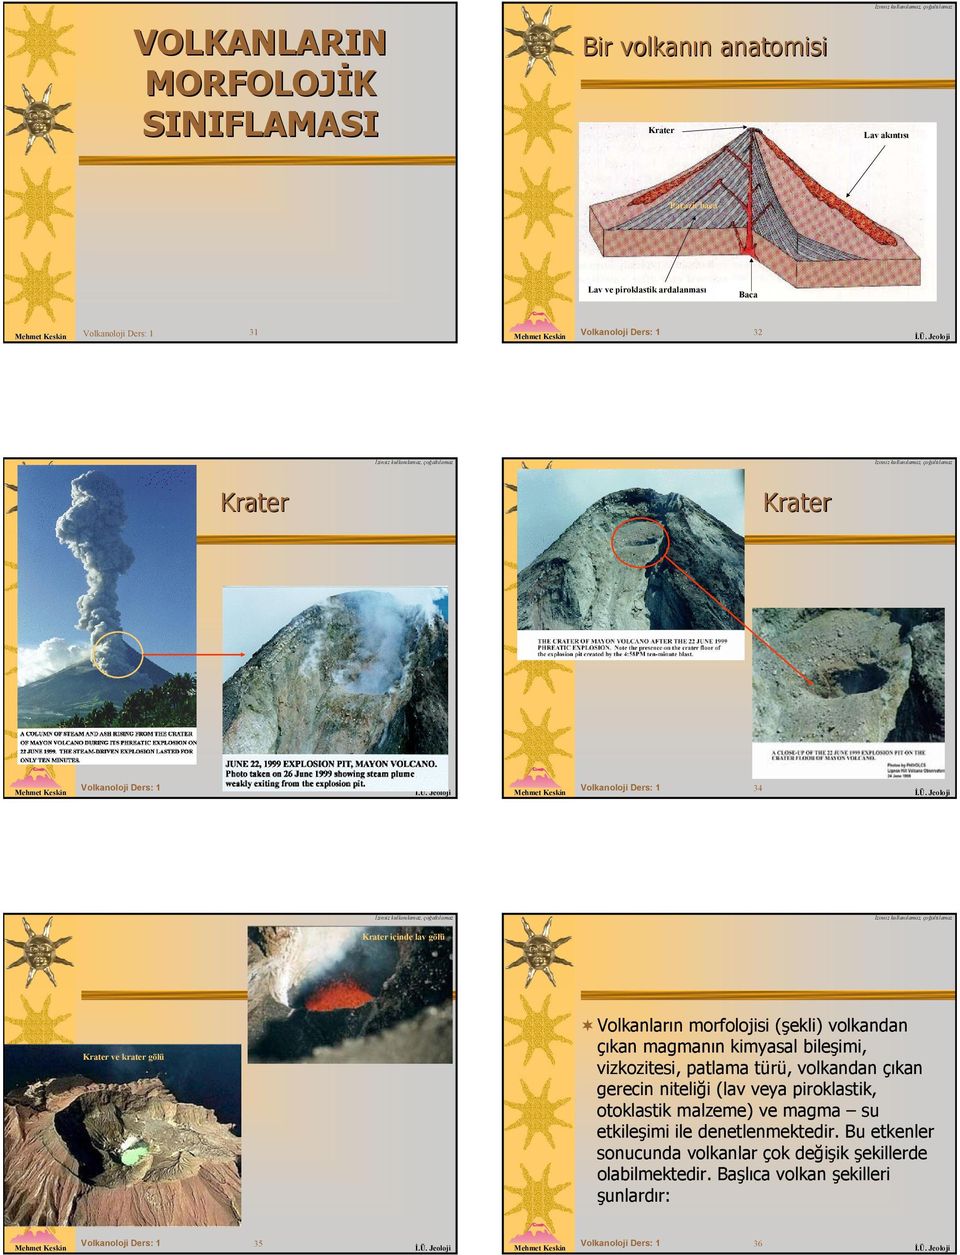 magmanın kimyasal bileşimi, vizkozitesi, patlama türü, volkandan çıkan gerecin niteliği (lav veya piroklastik, otoklastik malzeme) ve magma su etkileşimi ile